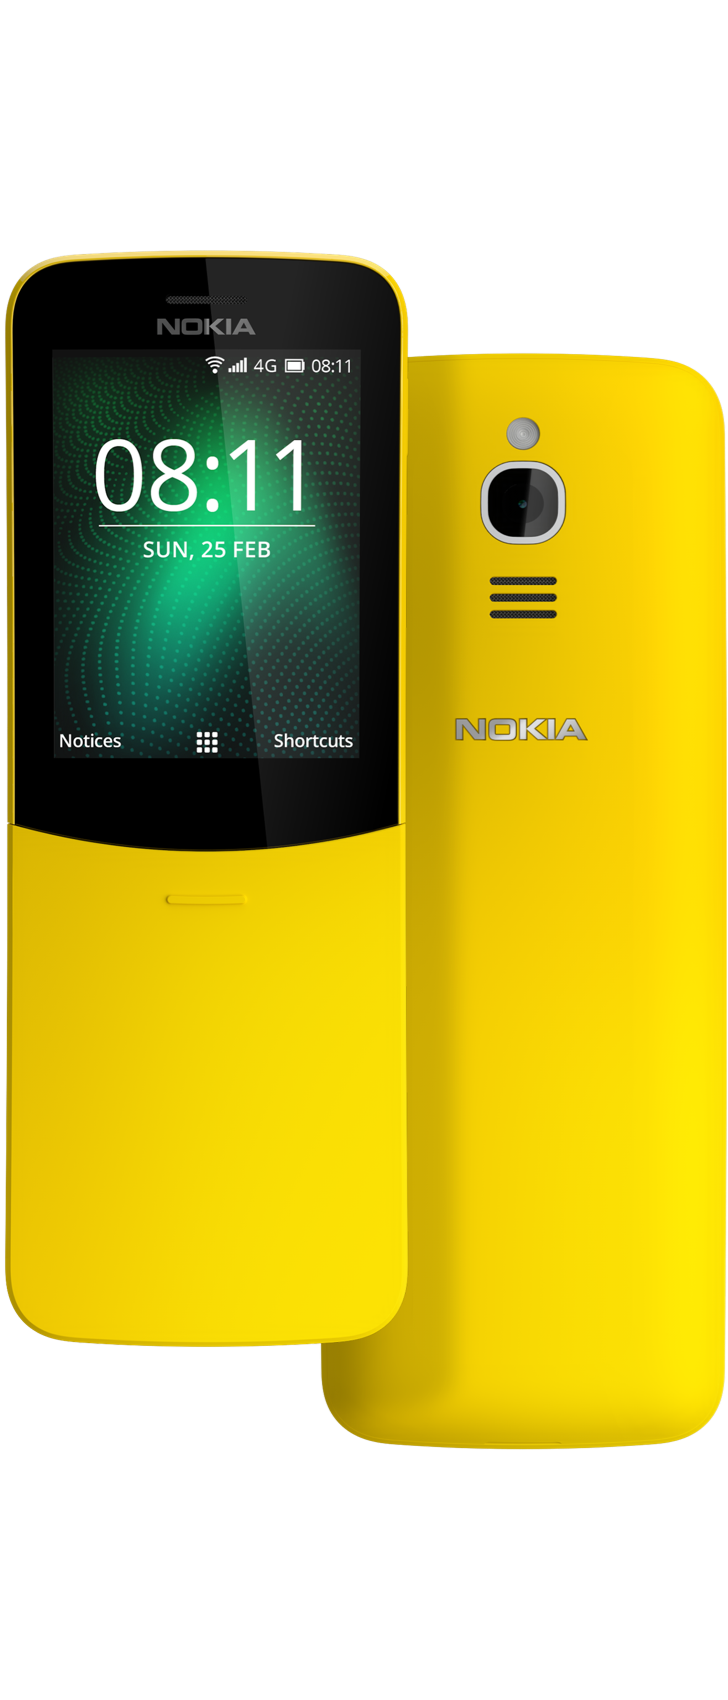 Nokia 8110 4g Mobile Nokia Phones Malaysia English